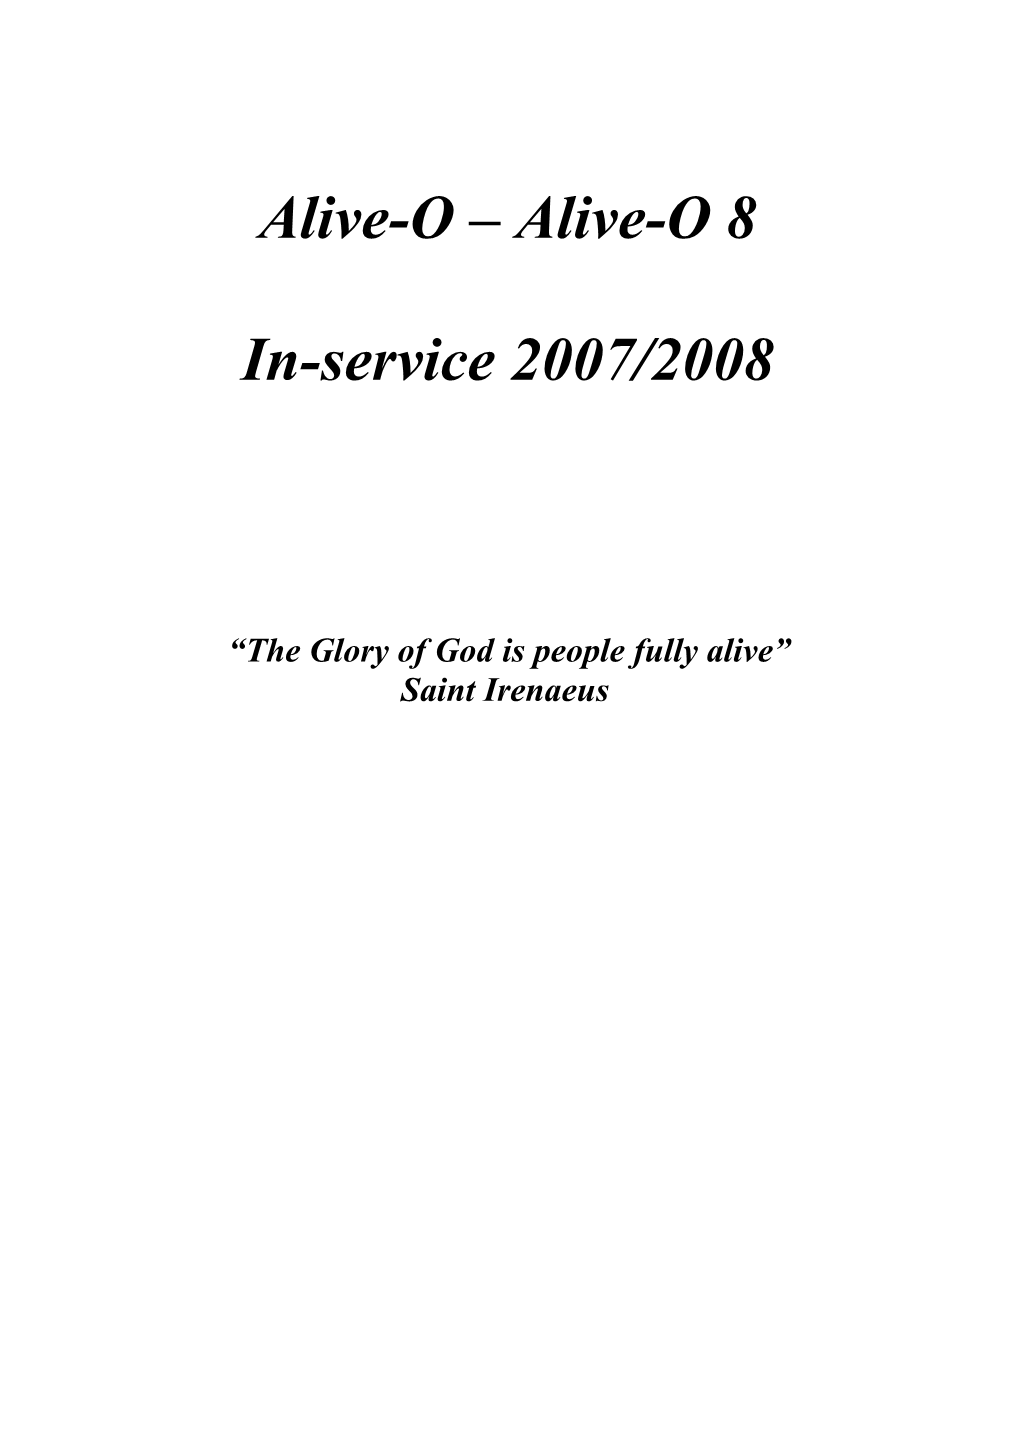 Alive O Alive O 8 Inservice Booklet